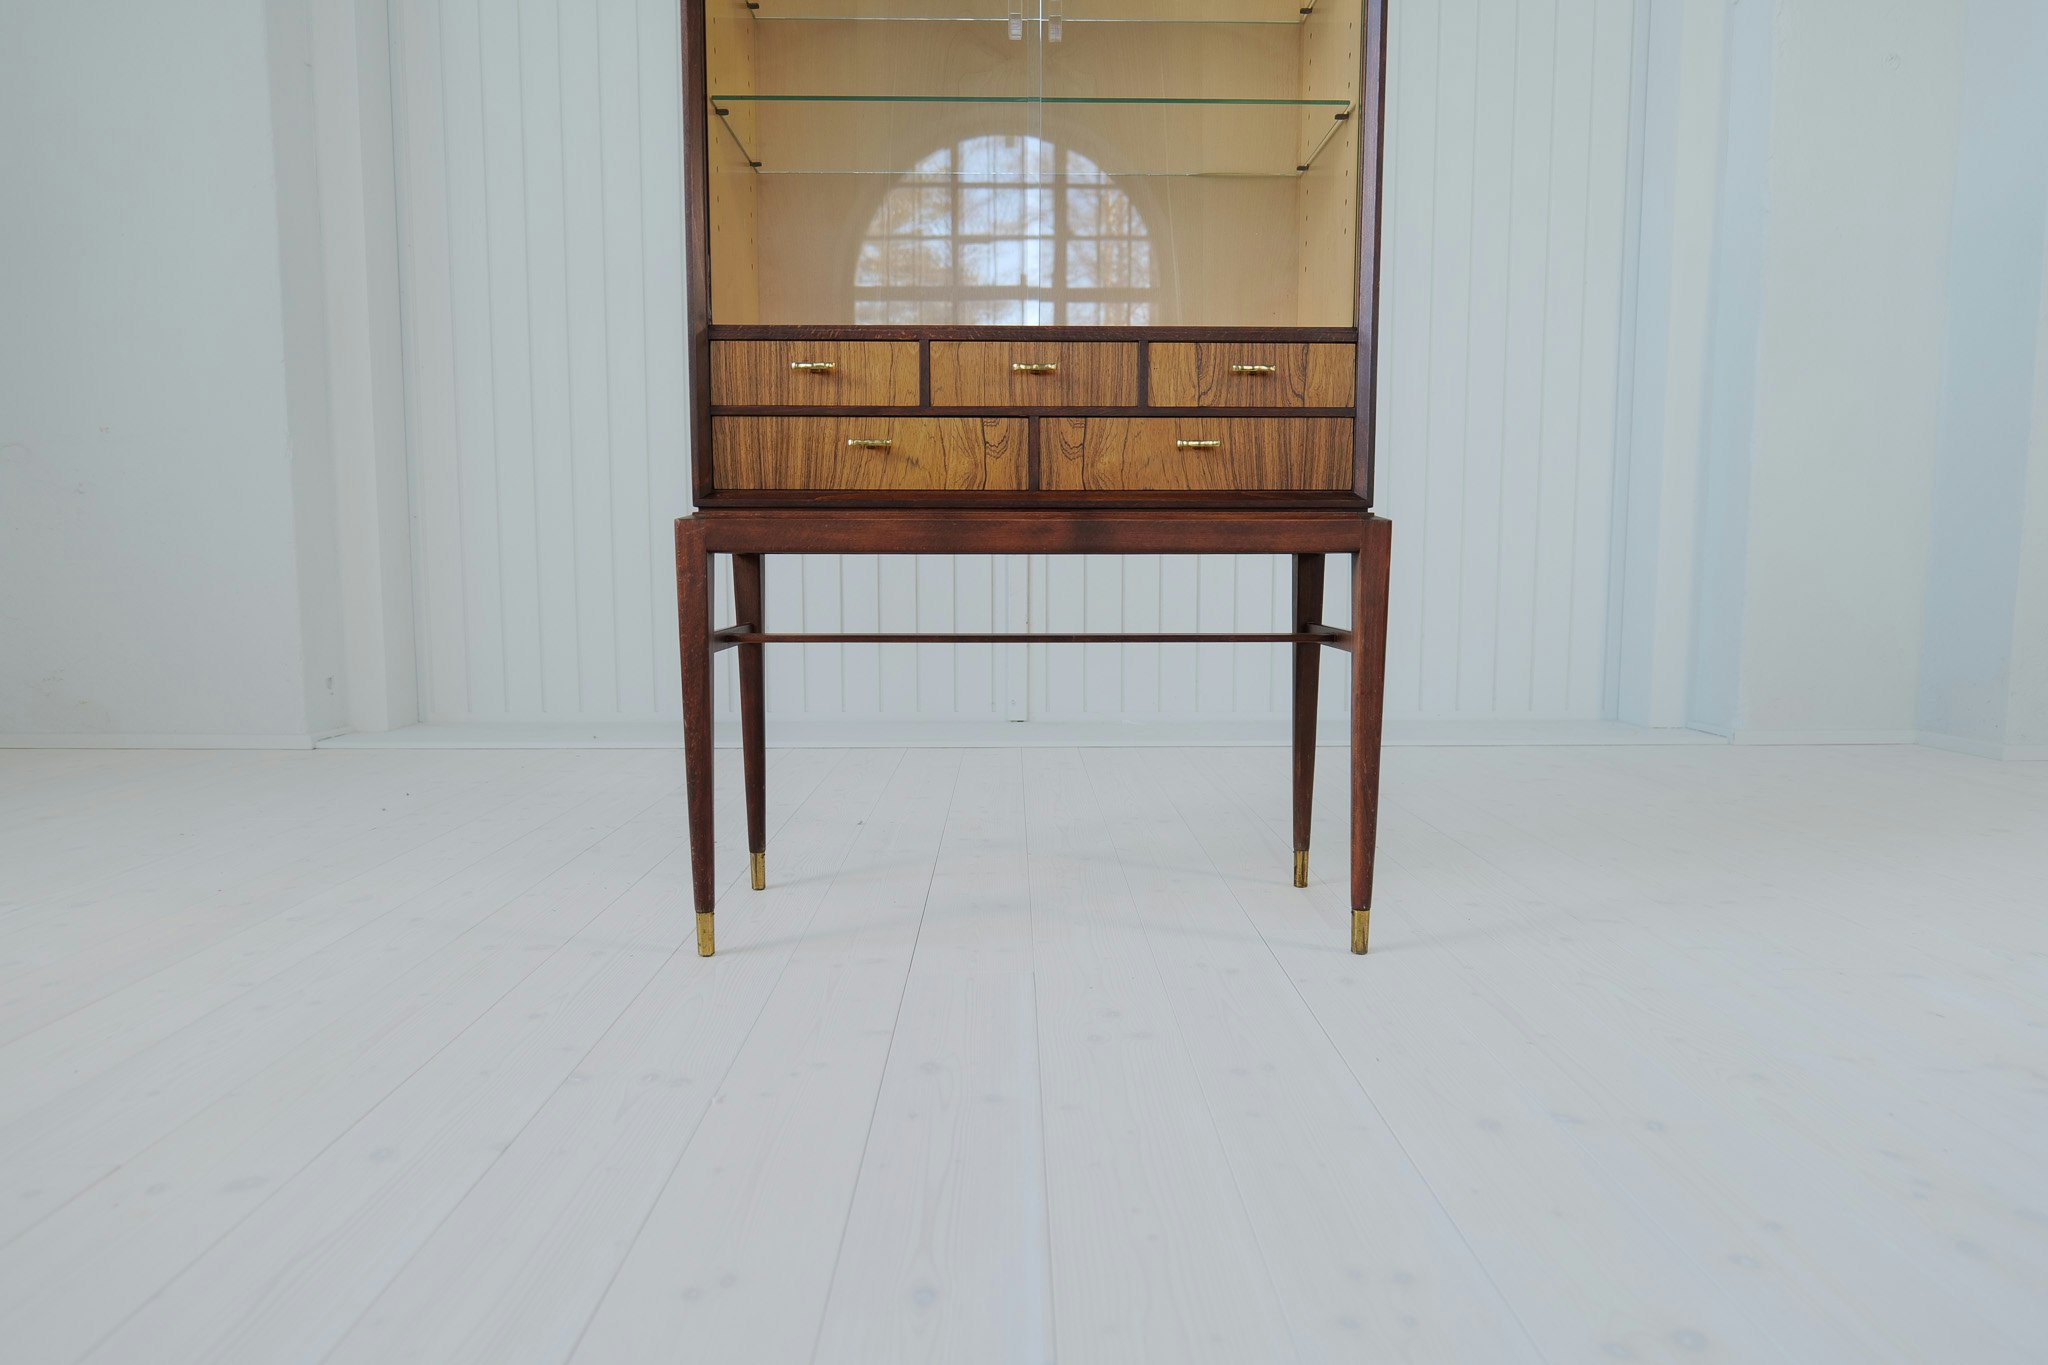 Midcentury Modern Cabinet by Svante Skogh for Seffle Möbelfabrik, Sweden